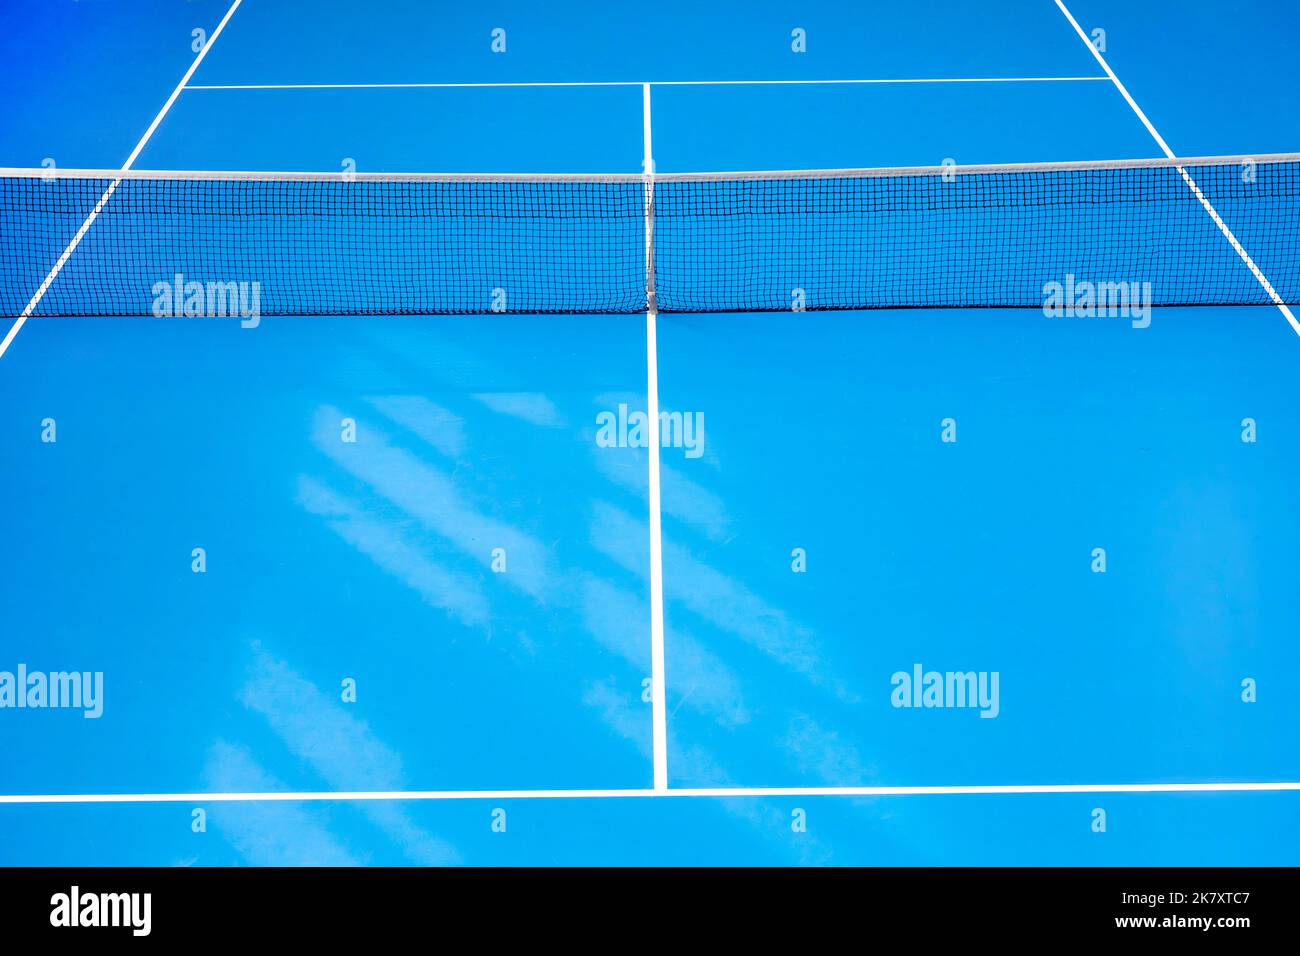 Tennis de paddle bleu et terrain dur avec ombres. Concept de compétition de tennis. Affiche sur le thème du sport horizontal, cartes de vœux, en-têtes, site Web et application Banque D'Images